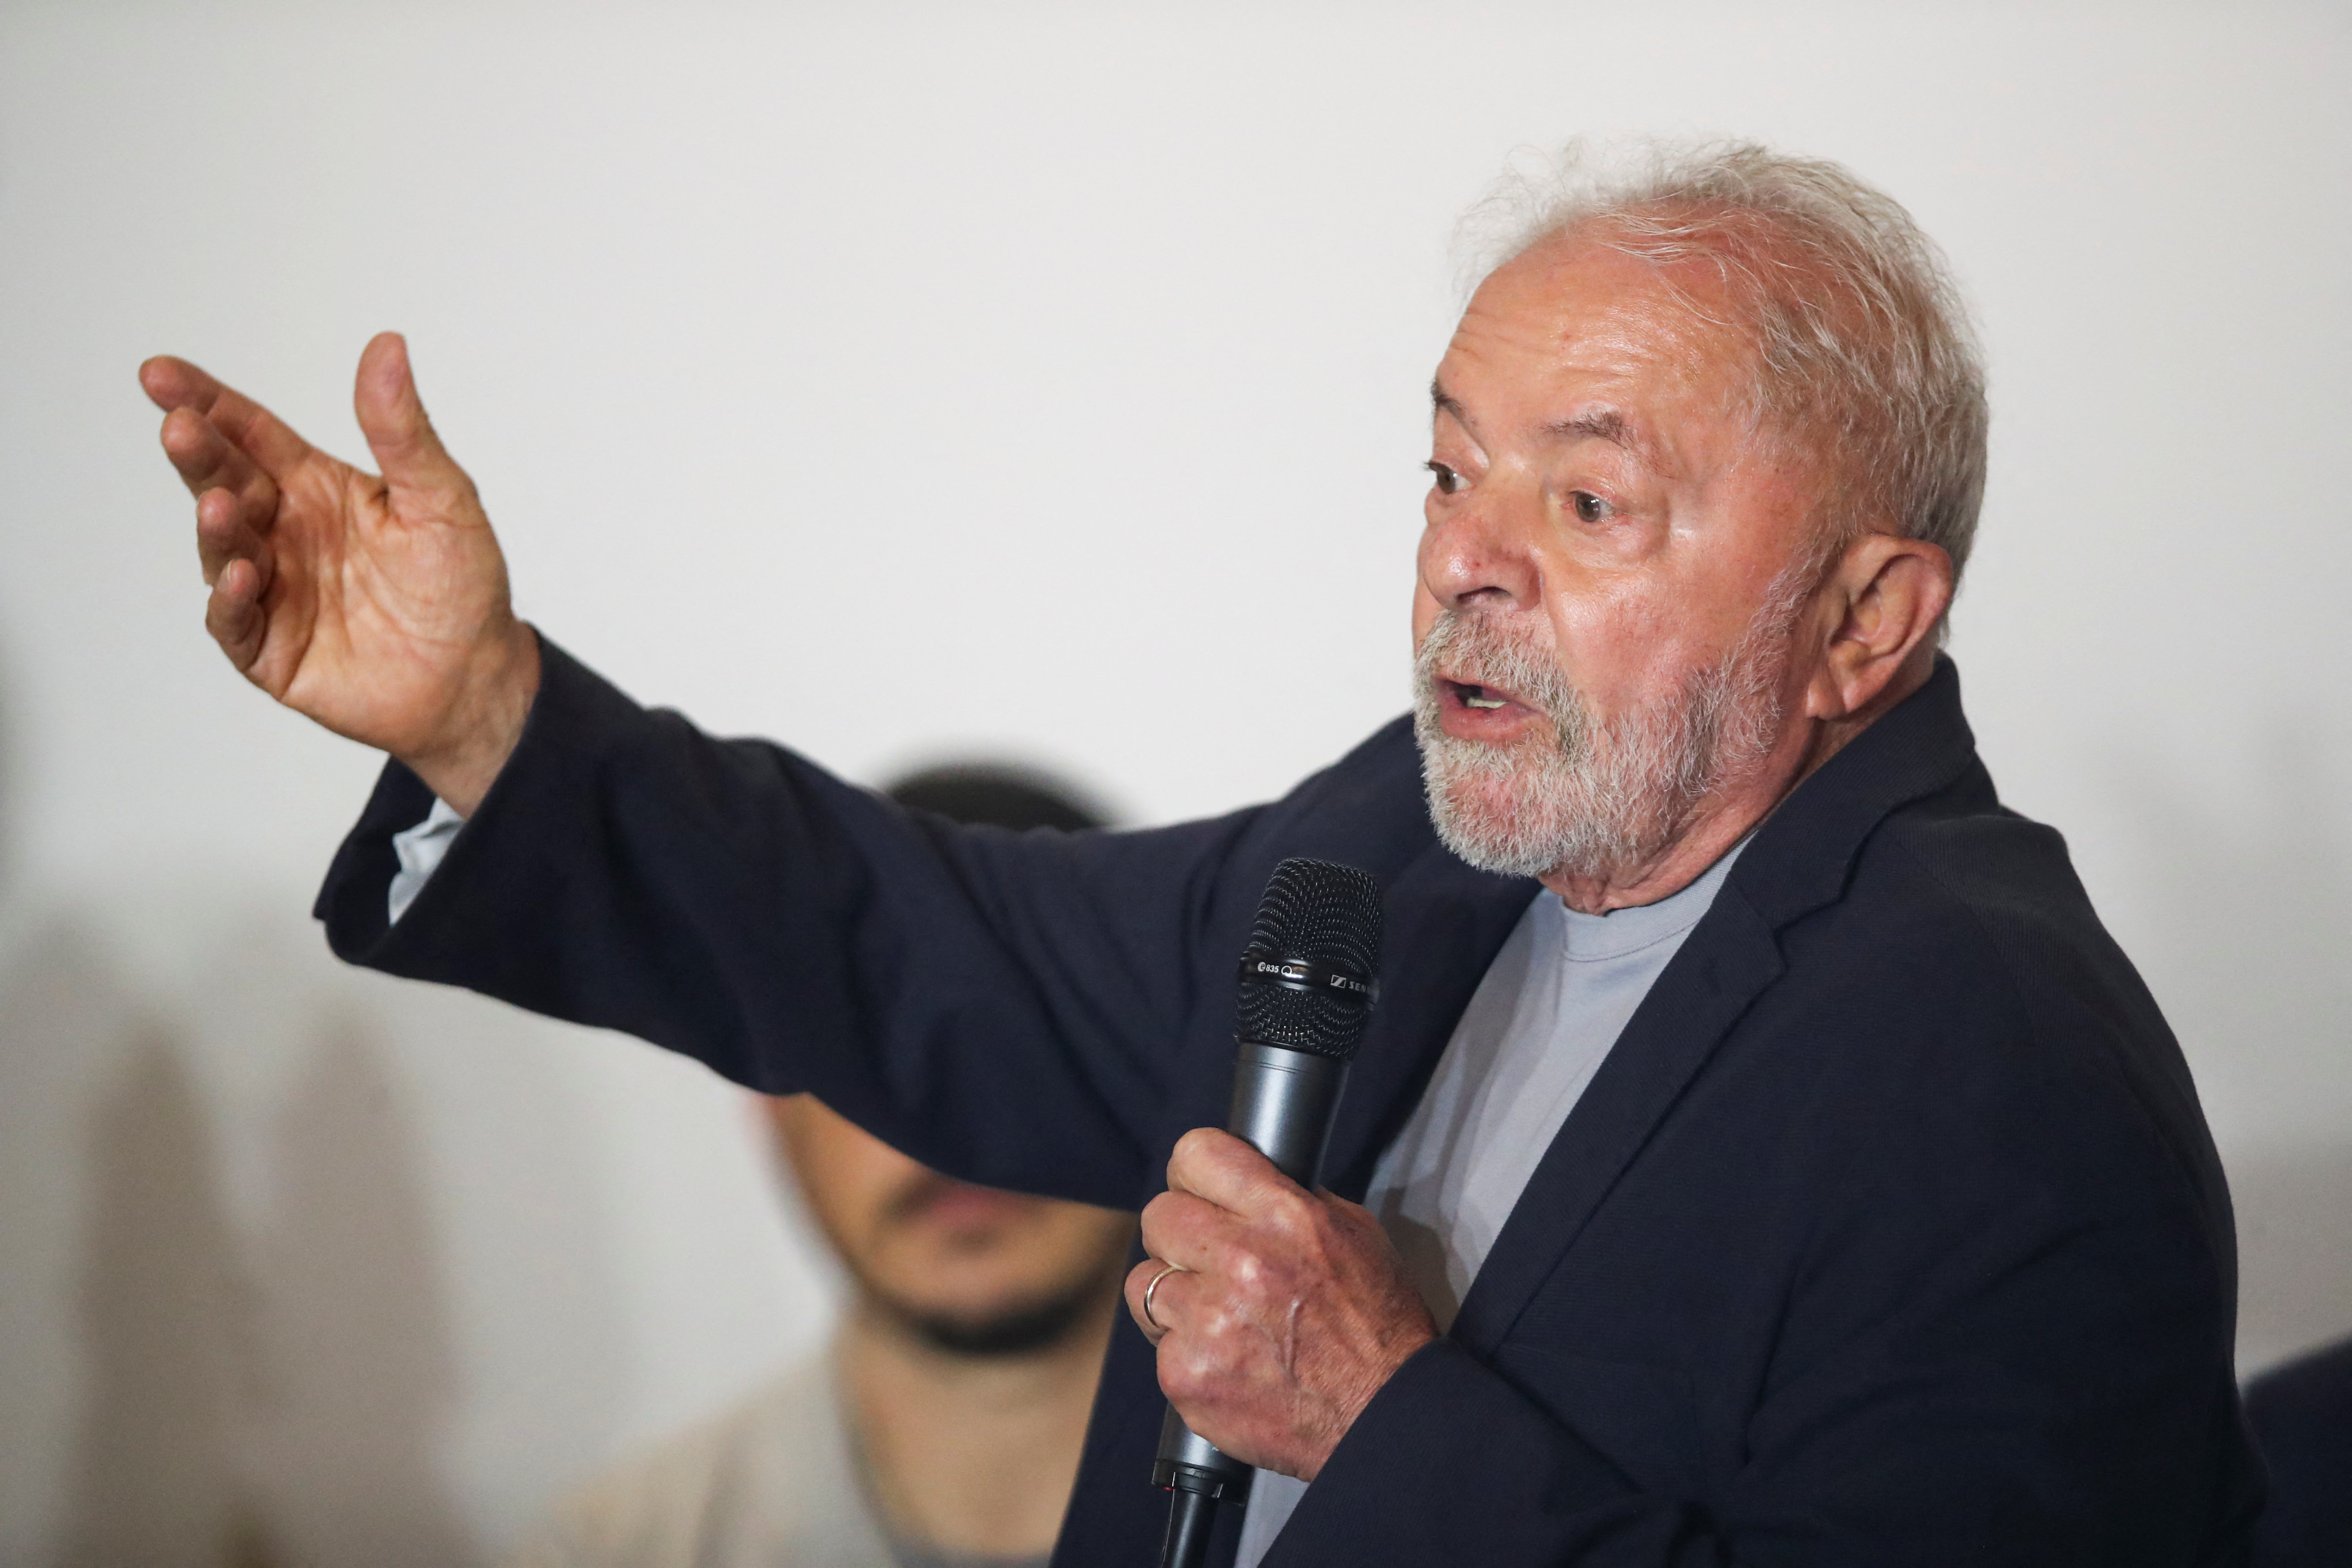 El candidato presidencial Luiz Inacio Lula da Silva habla en una reunión con líderes religiosos en San Pablo, Brasil, el 17 de octubre de 2022 (REUTERS/Mariana Greif)